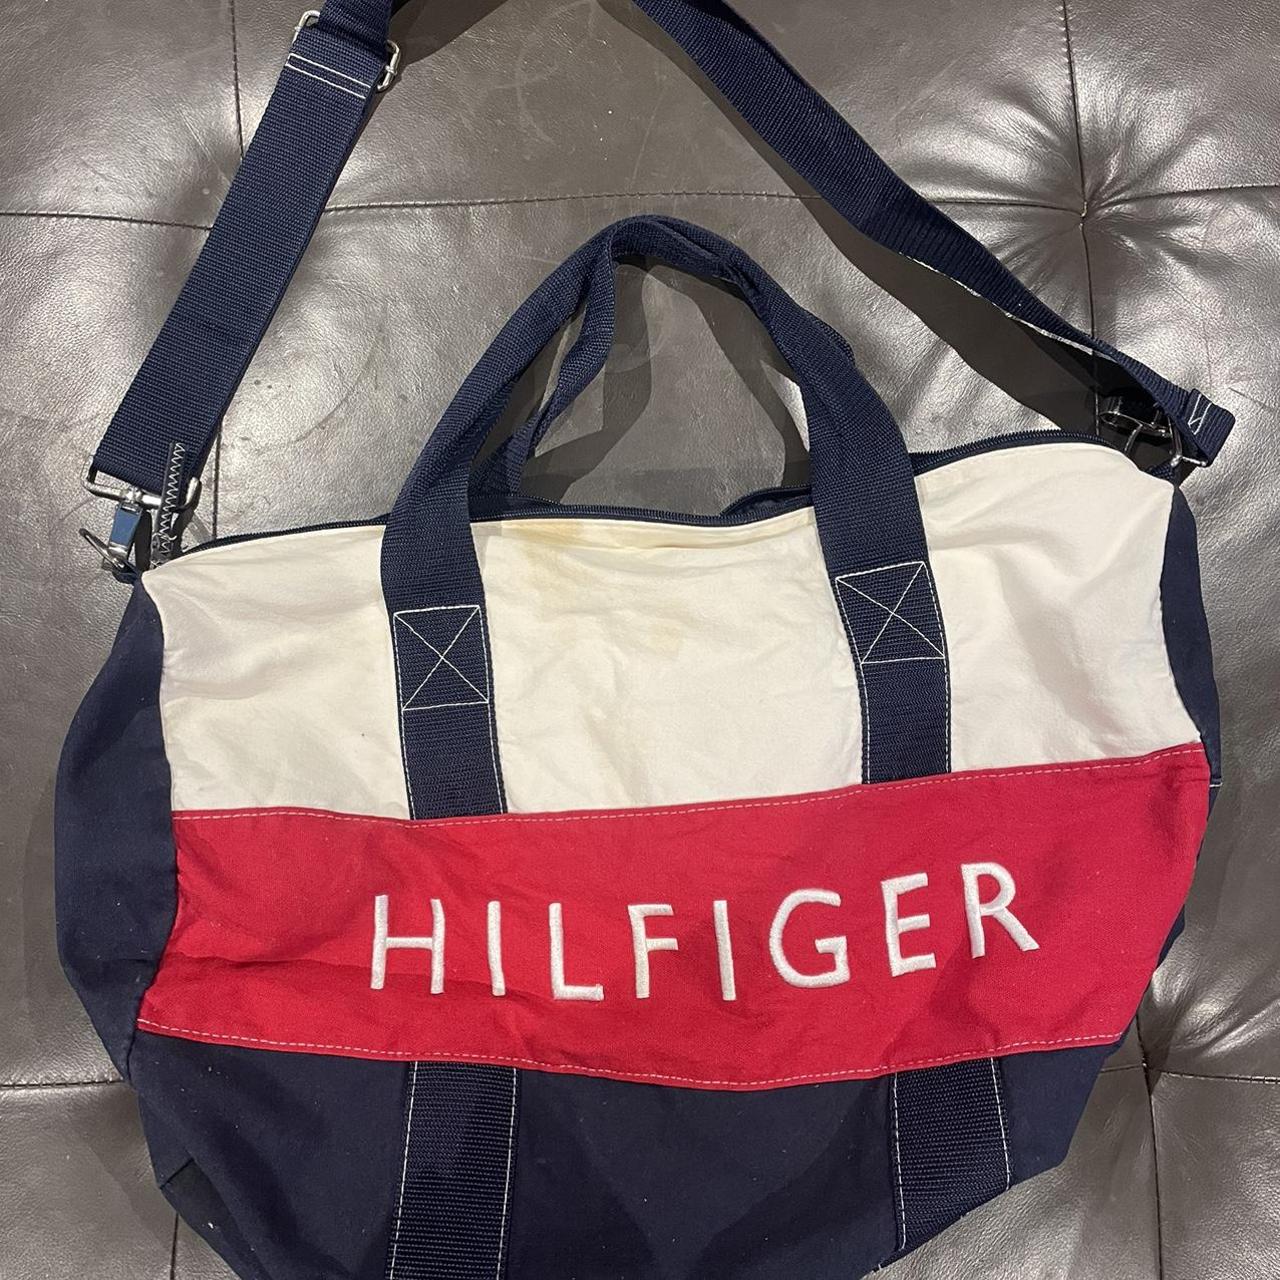 Tommy Hilfiger travel bag Broken zip and some stains... - Depop